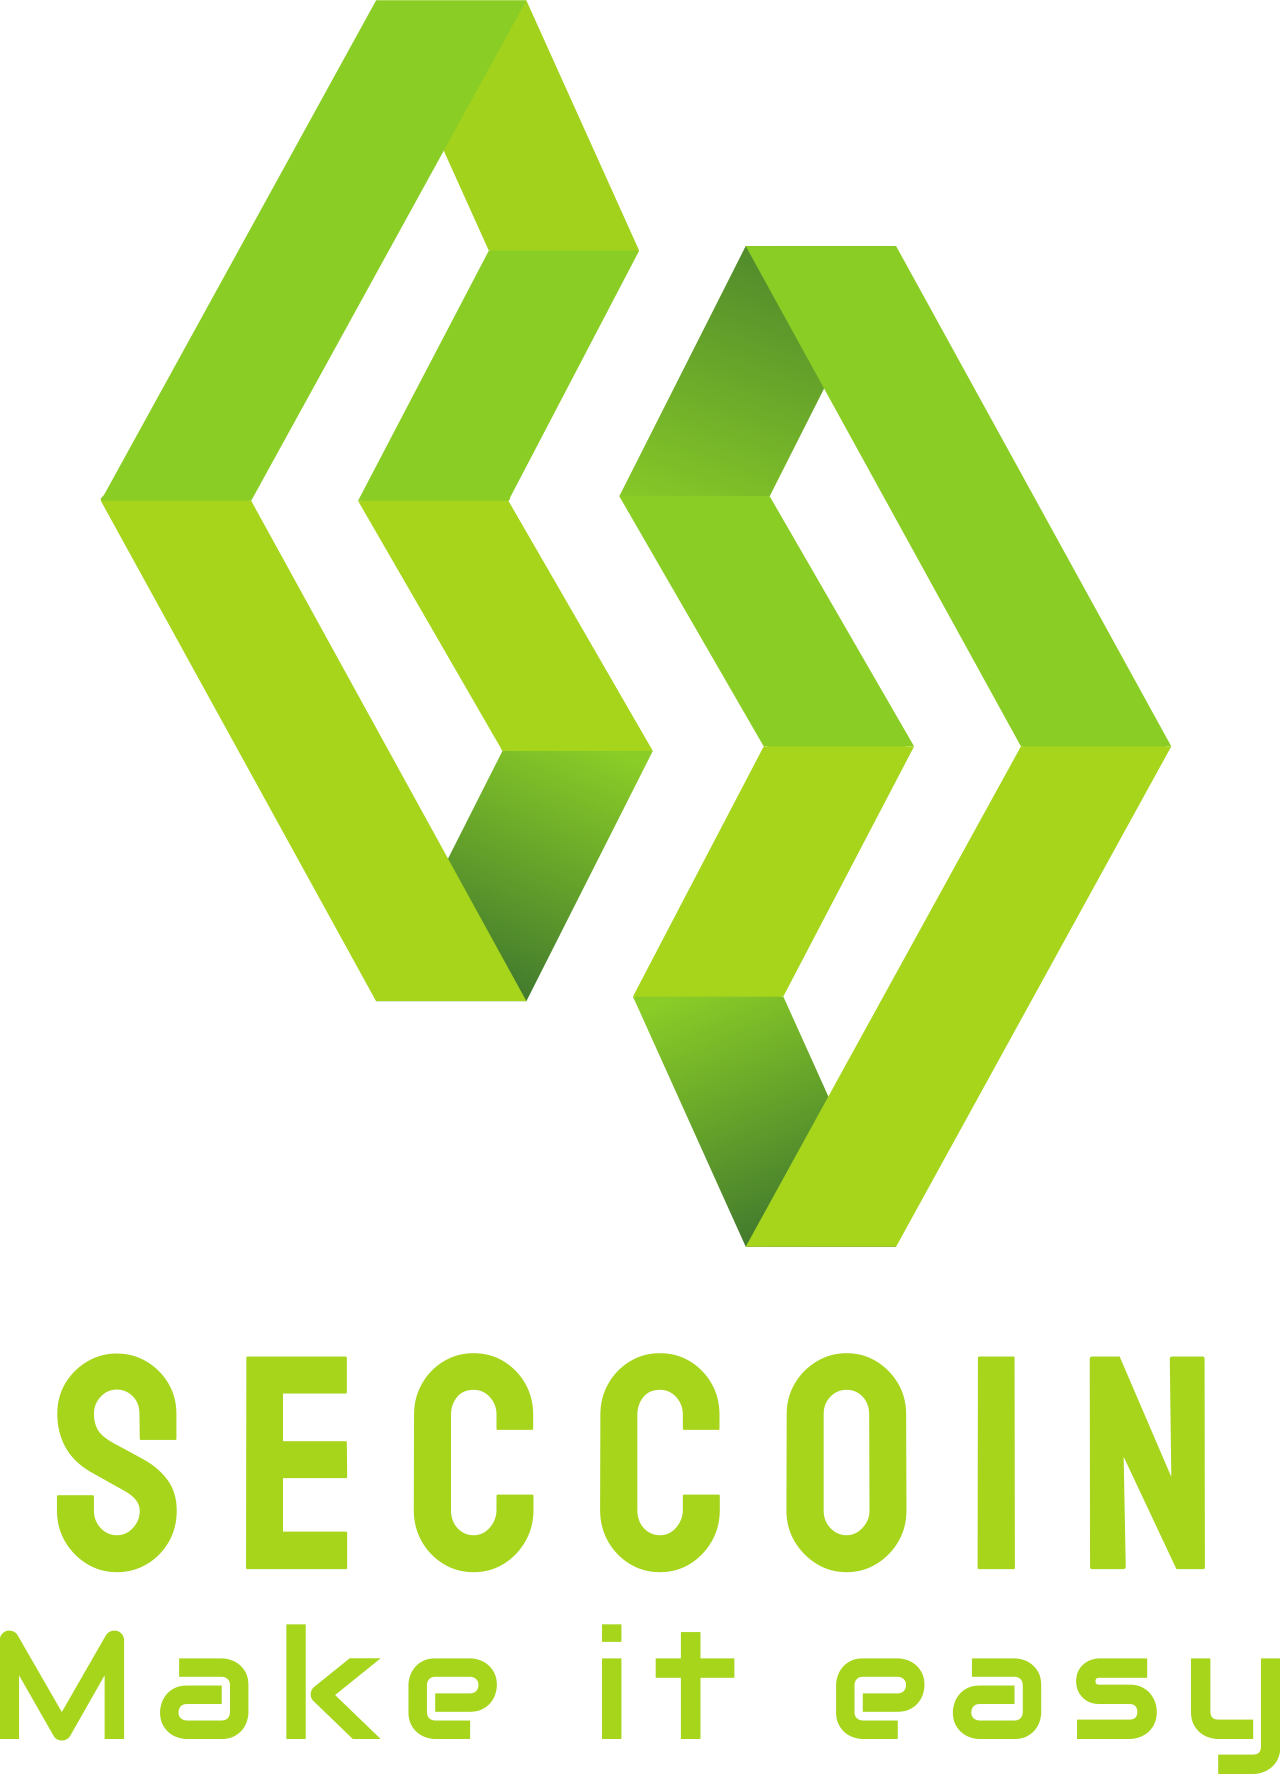 Seccoin's logo